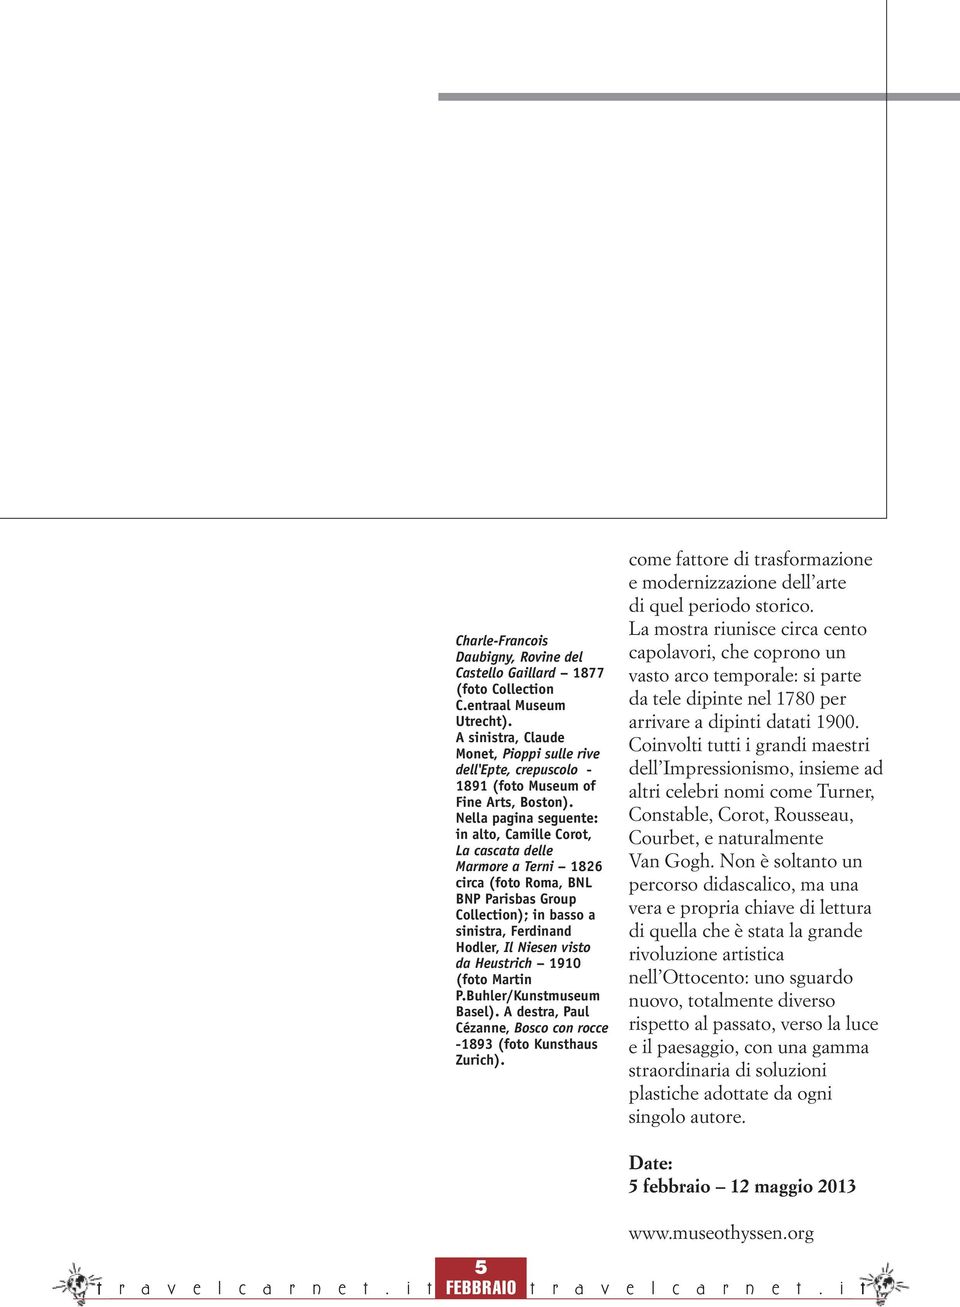 Nella pagina seguente: in alto, Camille Corot, La cascata delle Marmore a Terni 1826 circa (foto Roma, BNL BNP Parisbas Group Collection); in basso a sinistra, Ferdinand Hodler, Il Niesen visto da